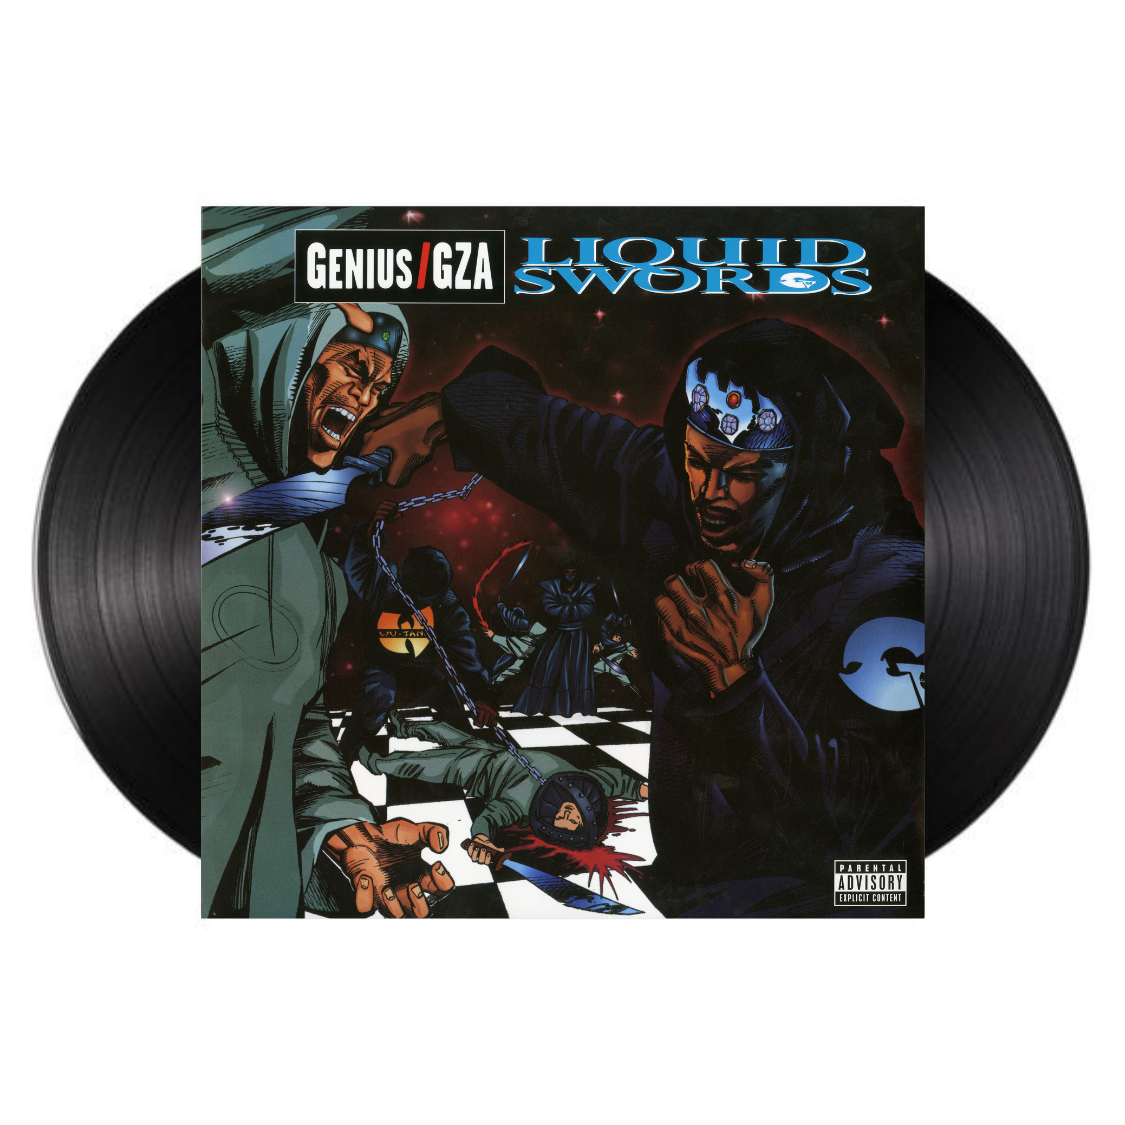 Genius/GZA - Liquid Swords (Vinyl LP)